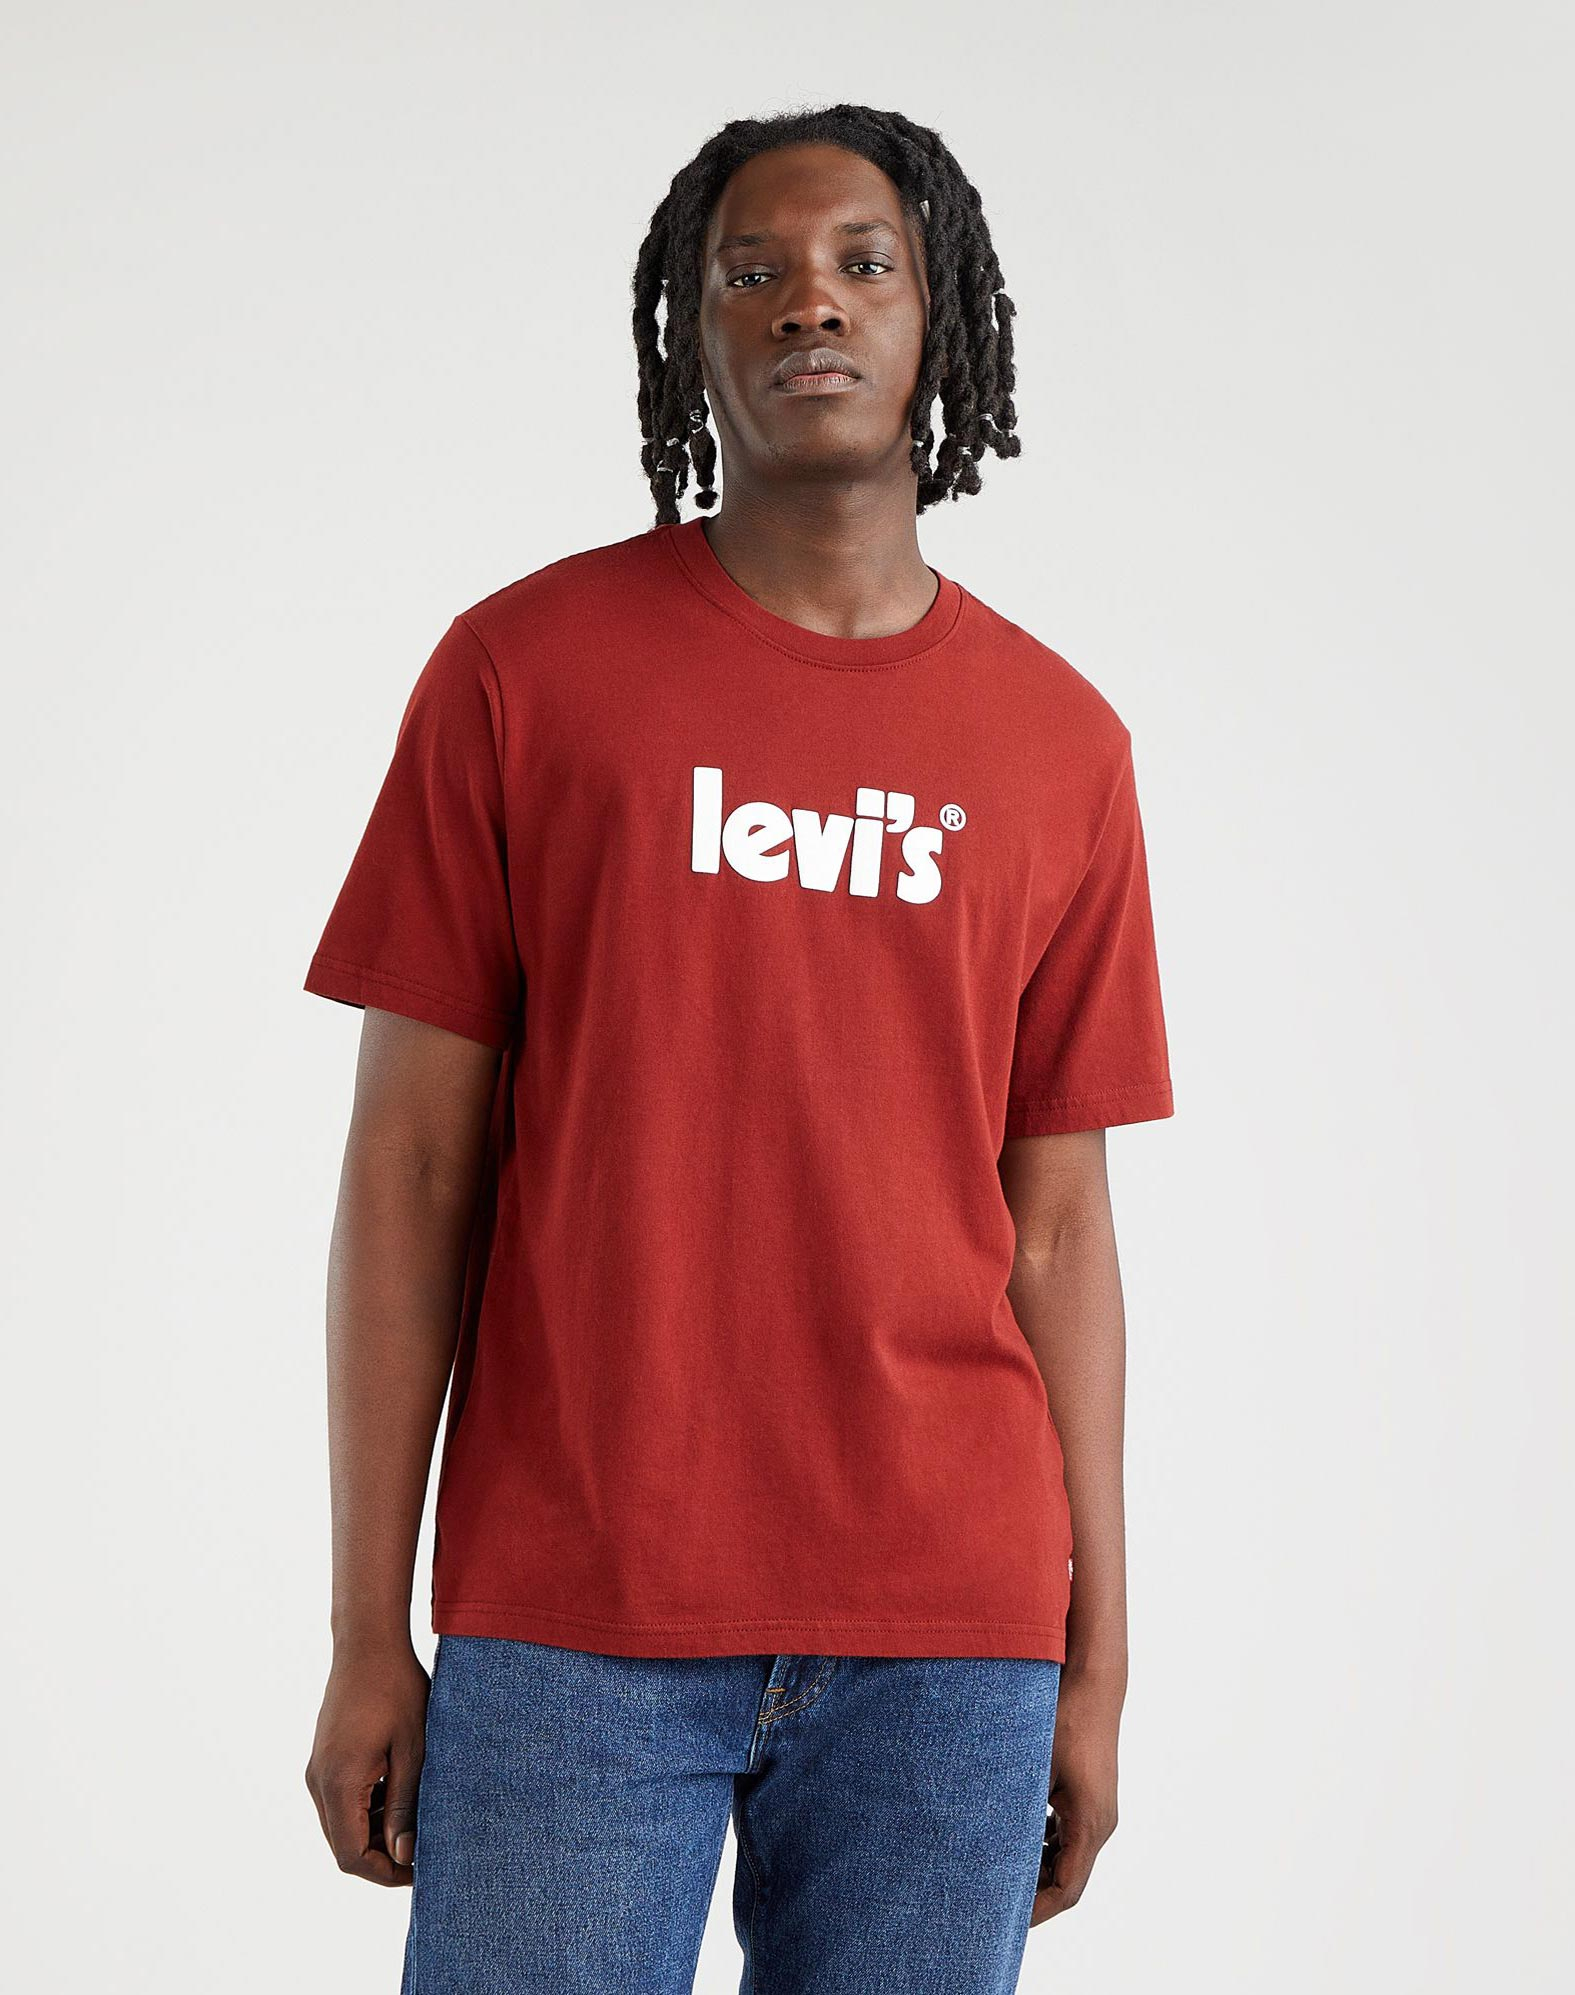 Levi's camiseta de hombre de m/c 16143-0394 roja